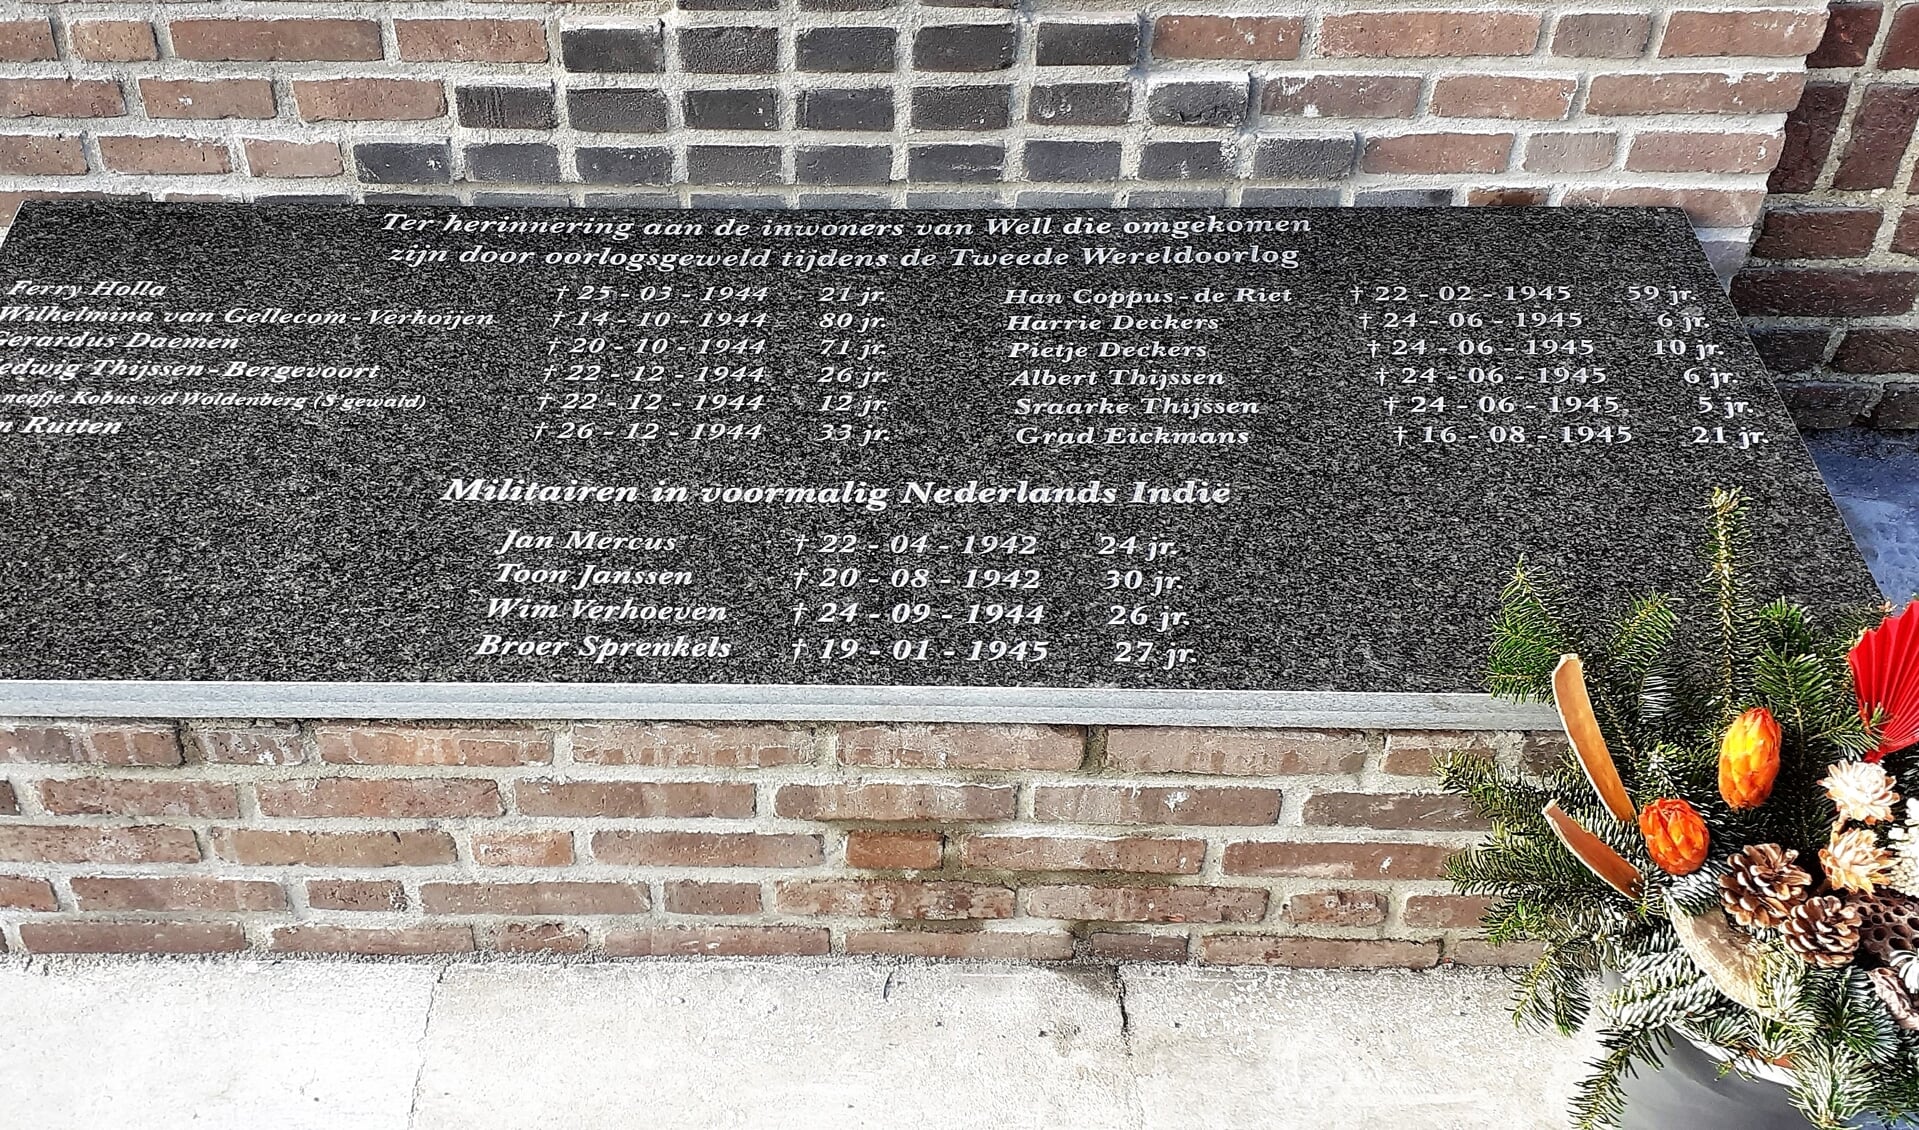 Op het monument staan de namen van Wellse slachtoffers van WO II